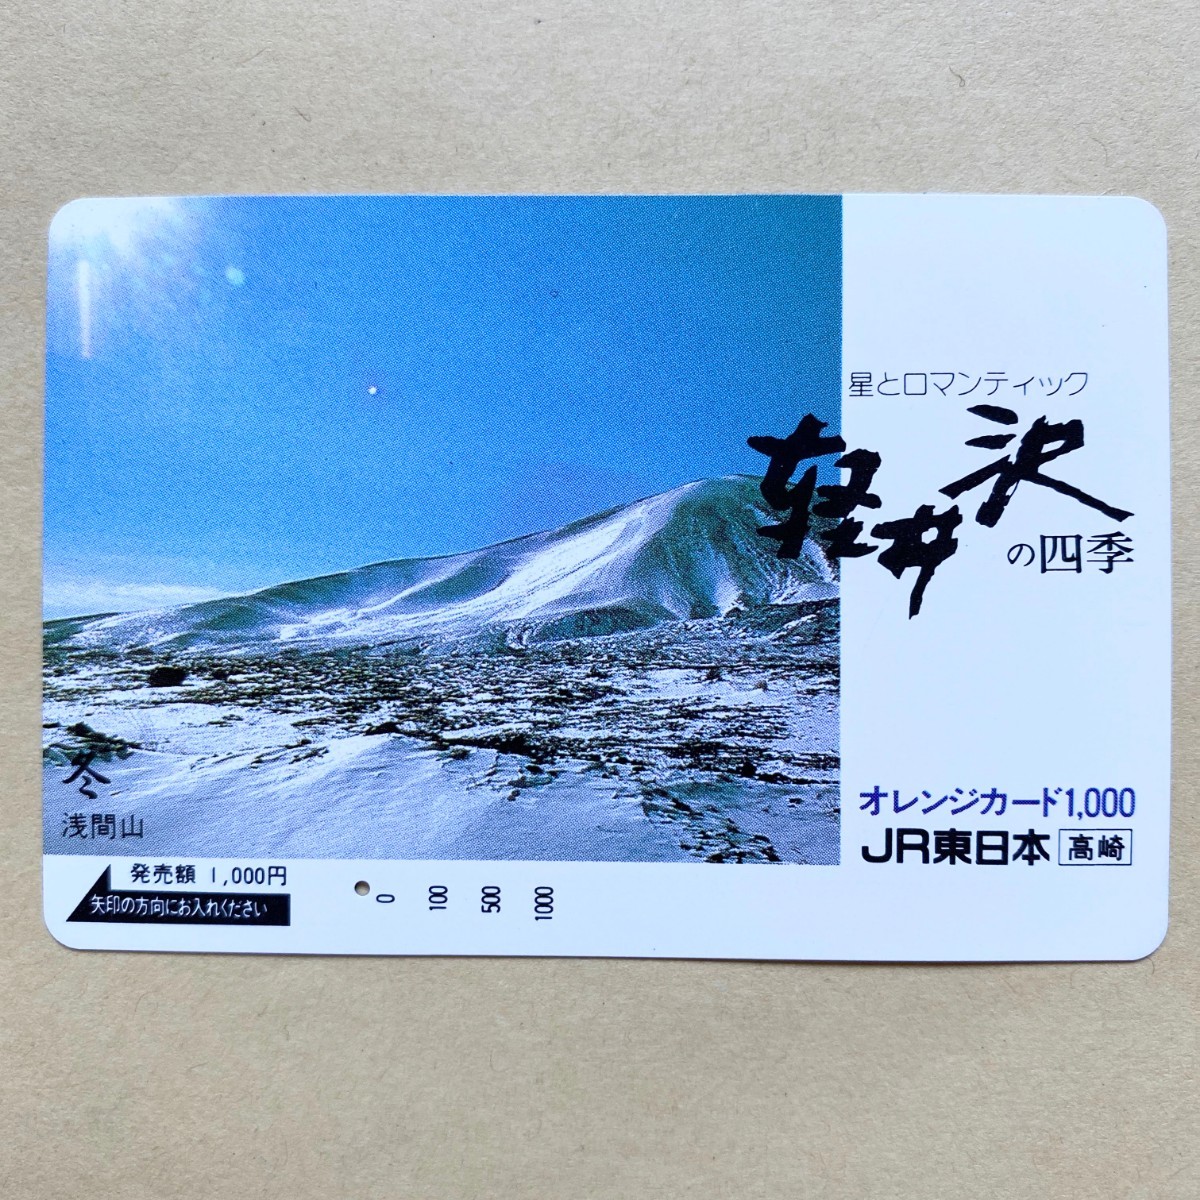 【使用済】 オレンジカード JR東日本 軽井沢の四季 浅間山_画像1